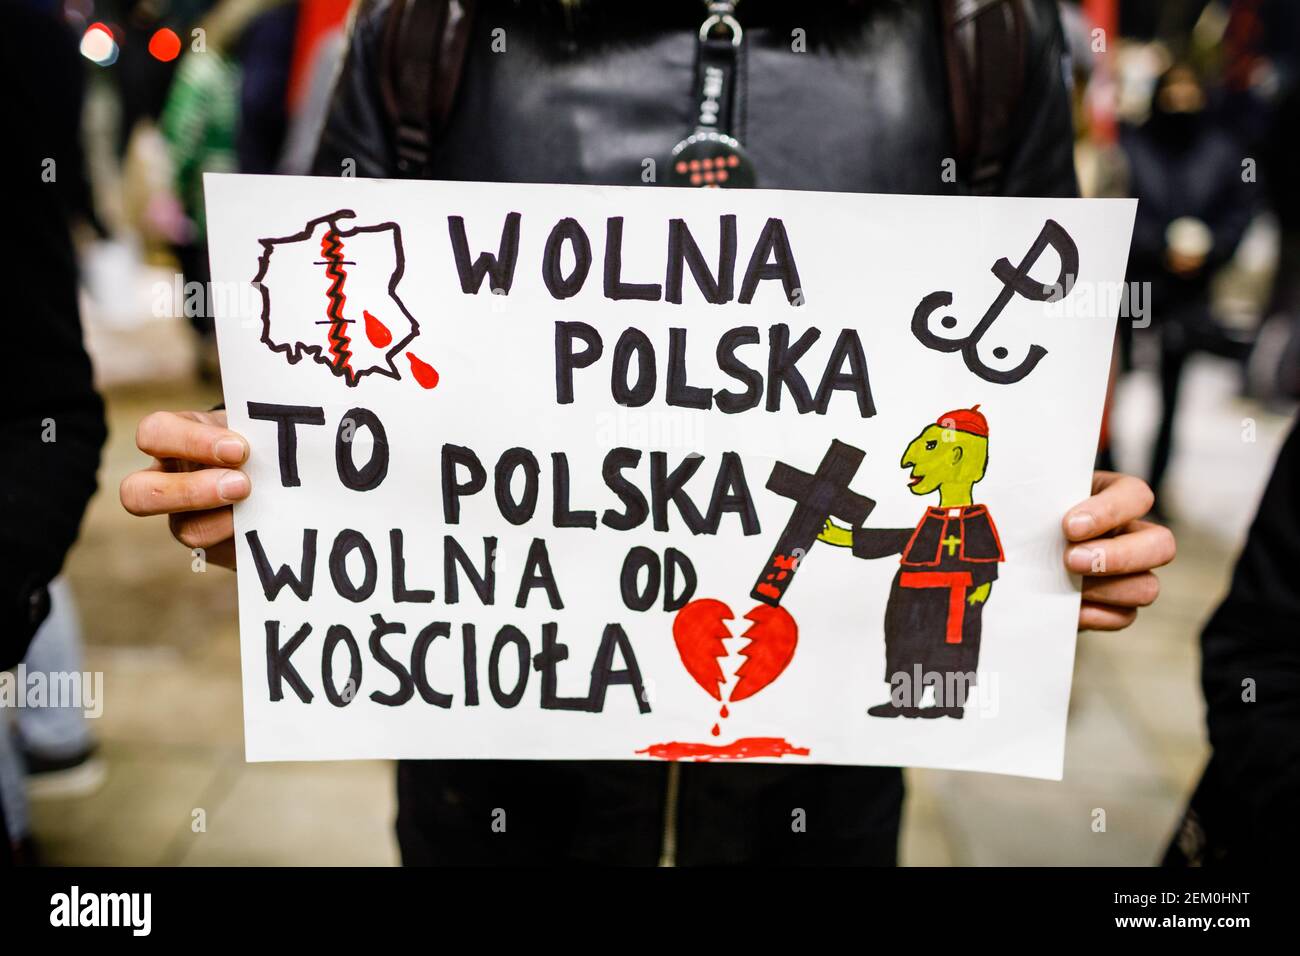 Ein Plakat mit der Aufschrift "Freies Polen ist Polen frei von der katholischen Kirche" ist während der Demonstration zu sehen. Nach dem Urteil des polnischen Verfassungsgerichts Th Stockfoto